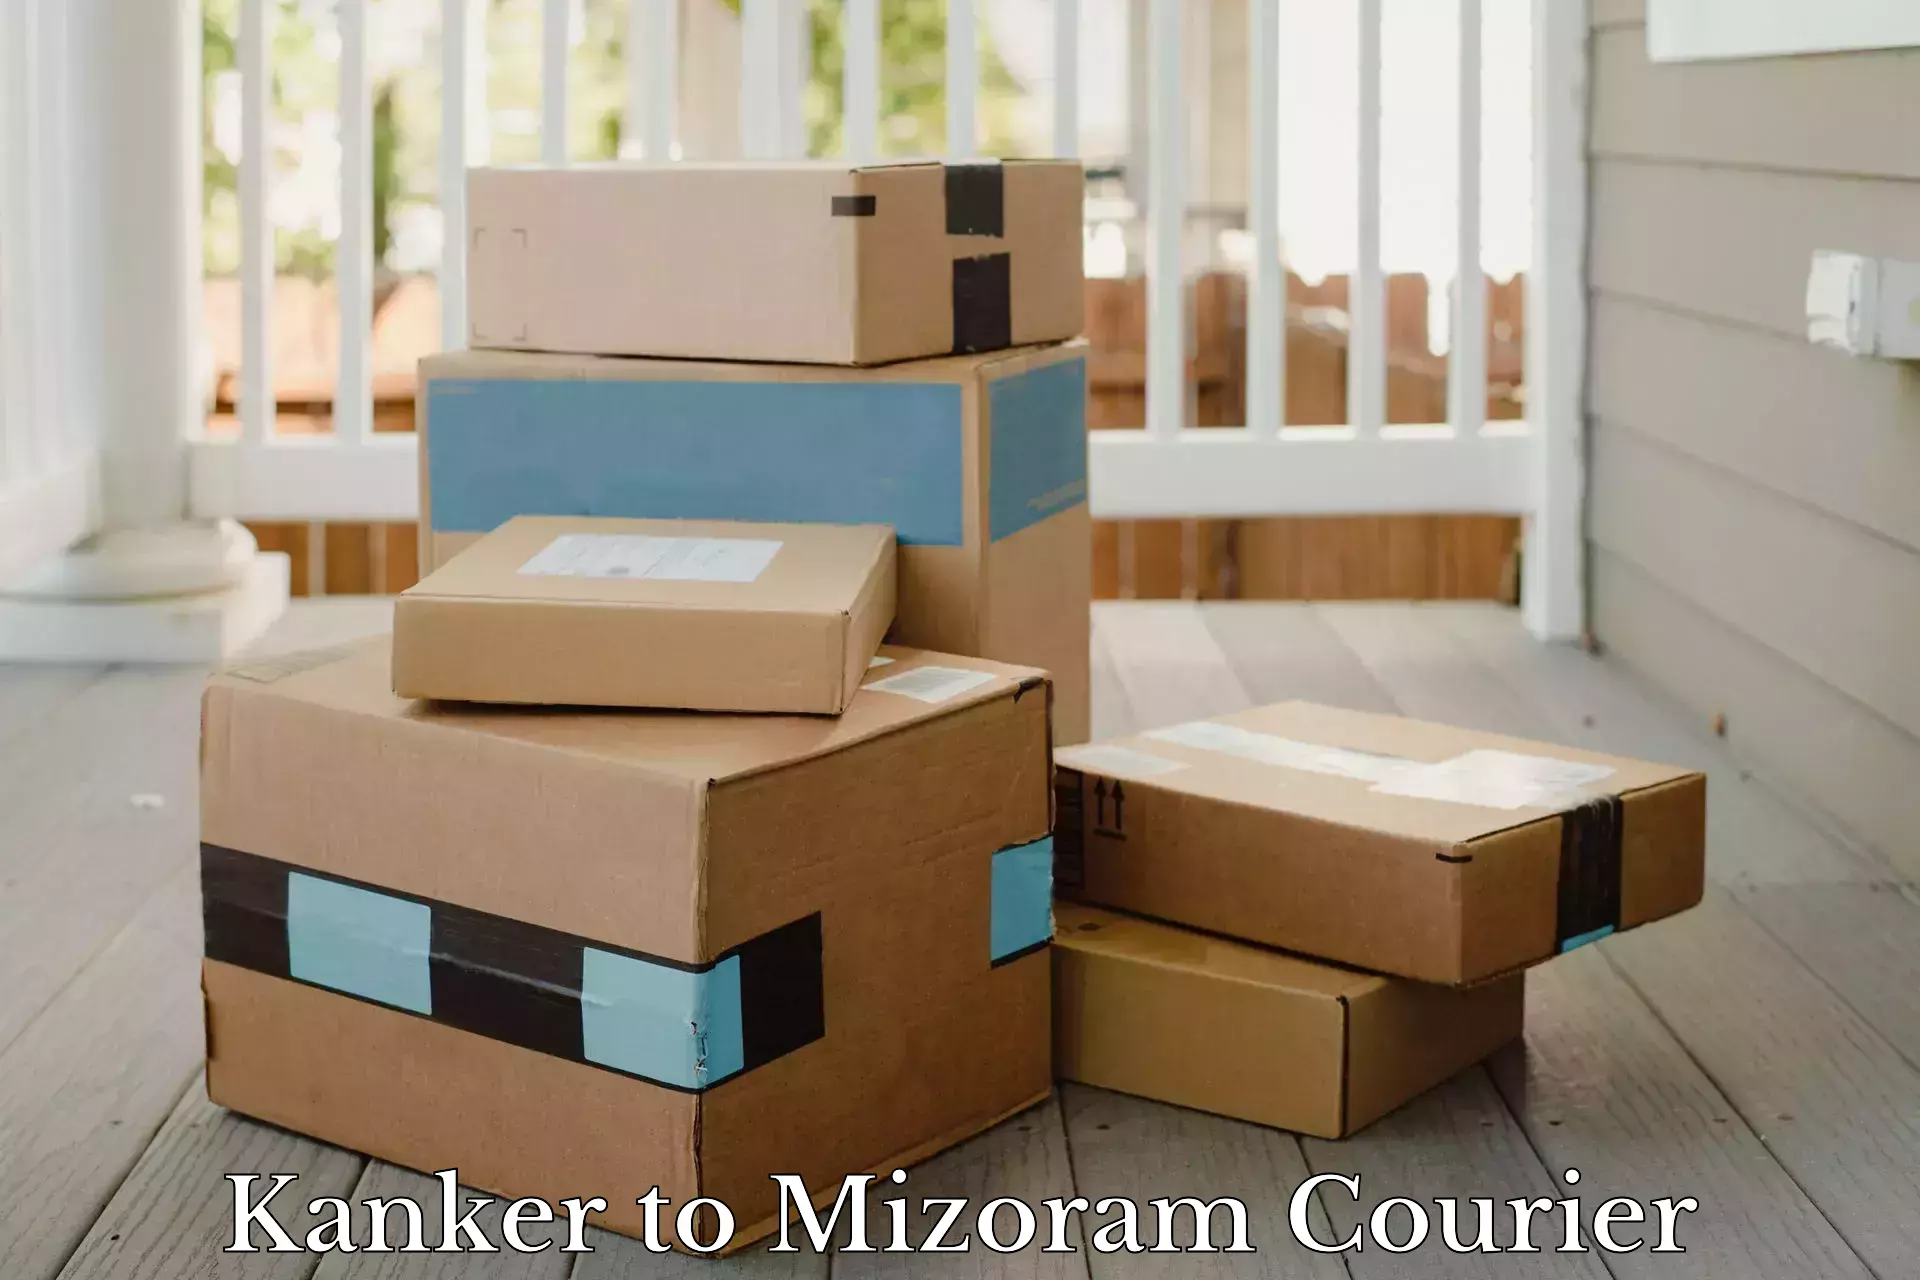 Express shipping in Kanker to Mizoram